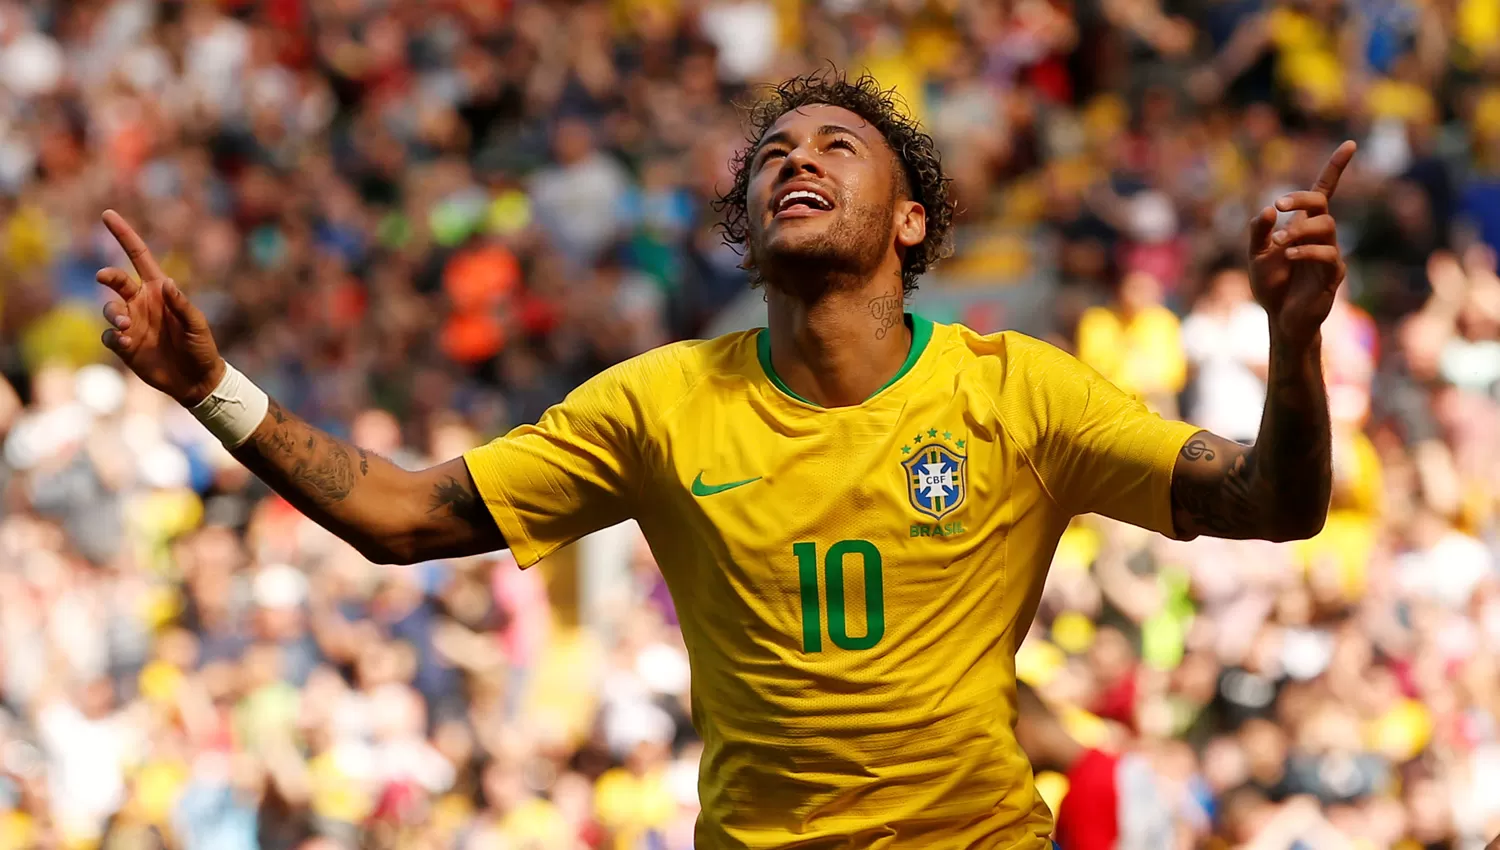 LA ESPERANZA. Neymar es la estrella de Brasil, que sueña con otro título mundial, esta vez en Rusia 2018. ARCHIVO